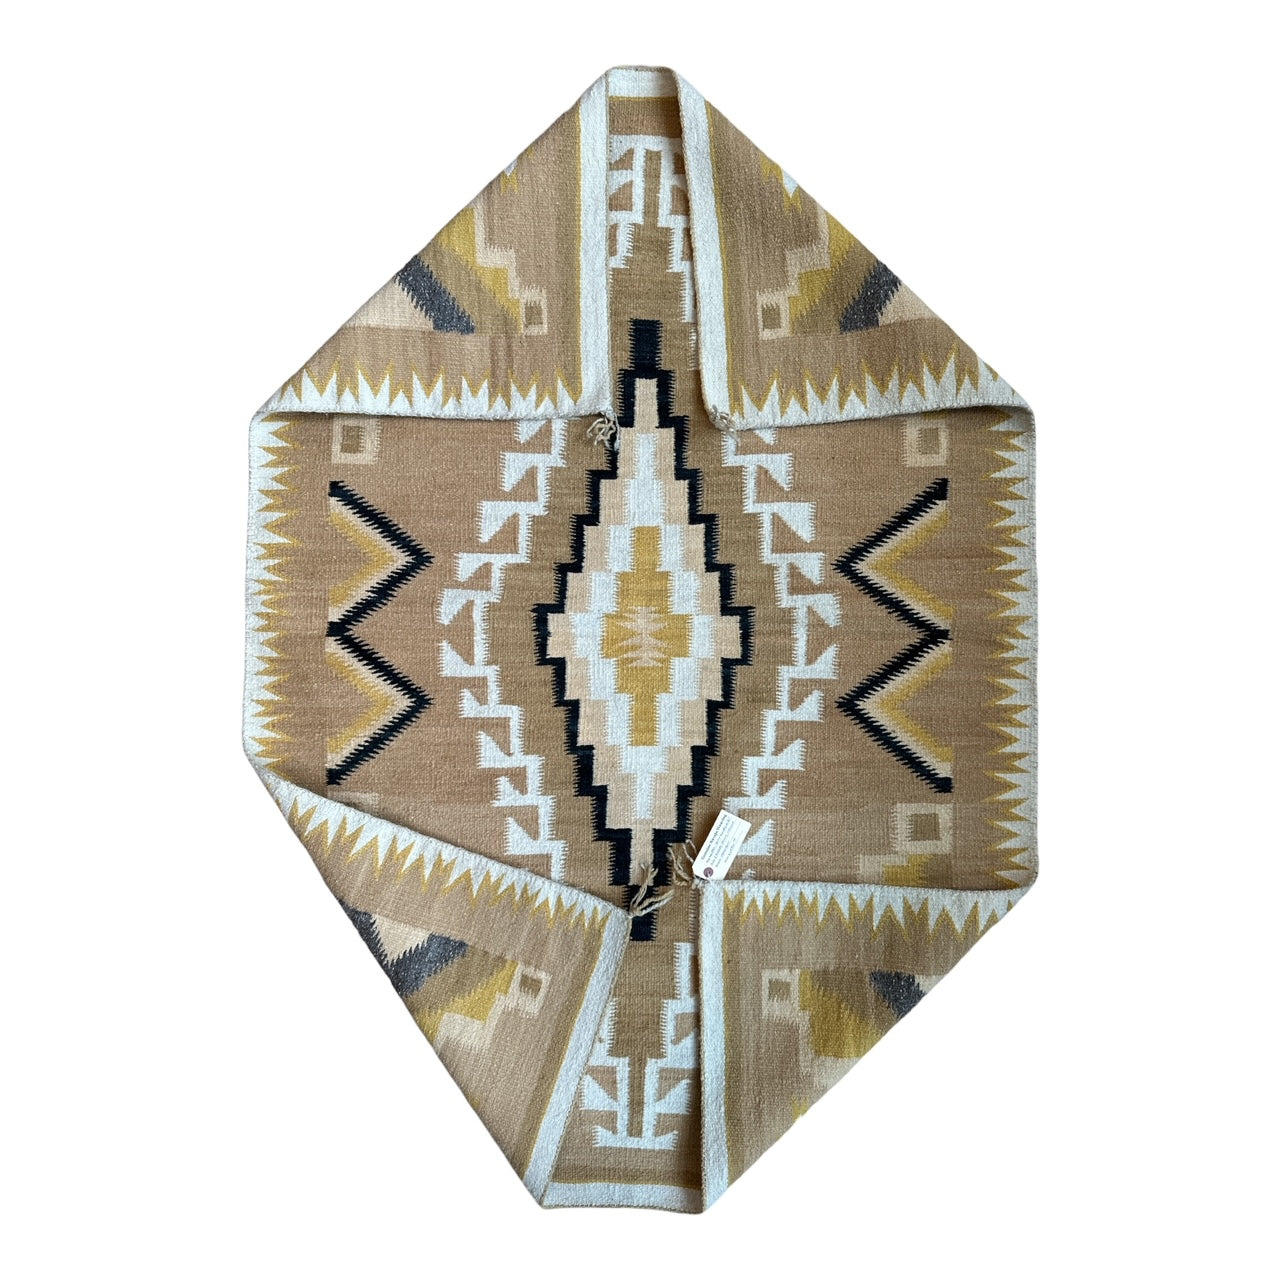 3 Turkey Ruins Chinle Navajo Weaving, navajo rug for sale, authentic navajo weaving, telluride furnishings, telluride art gallery 